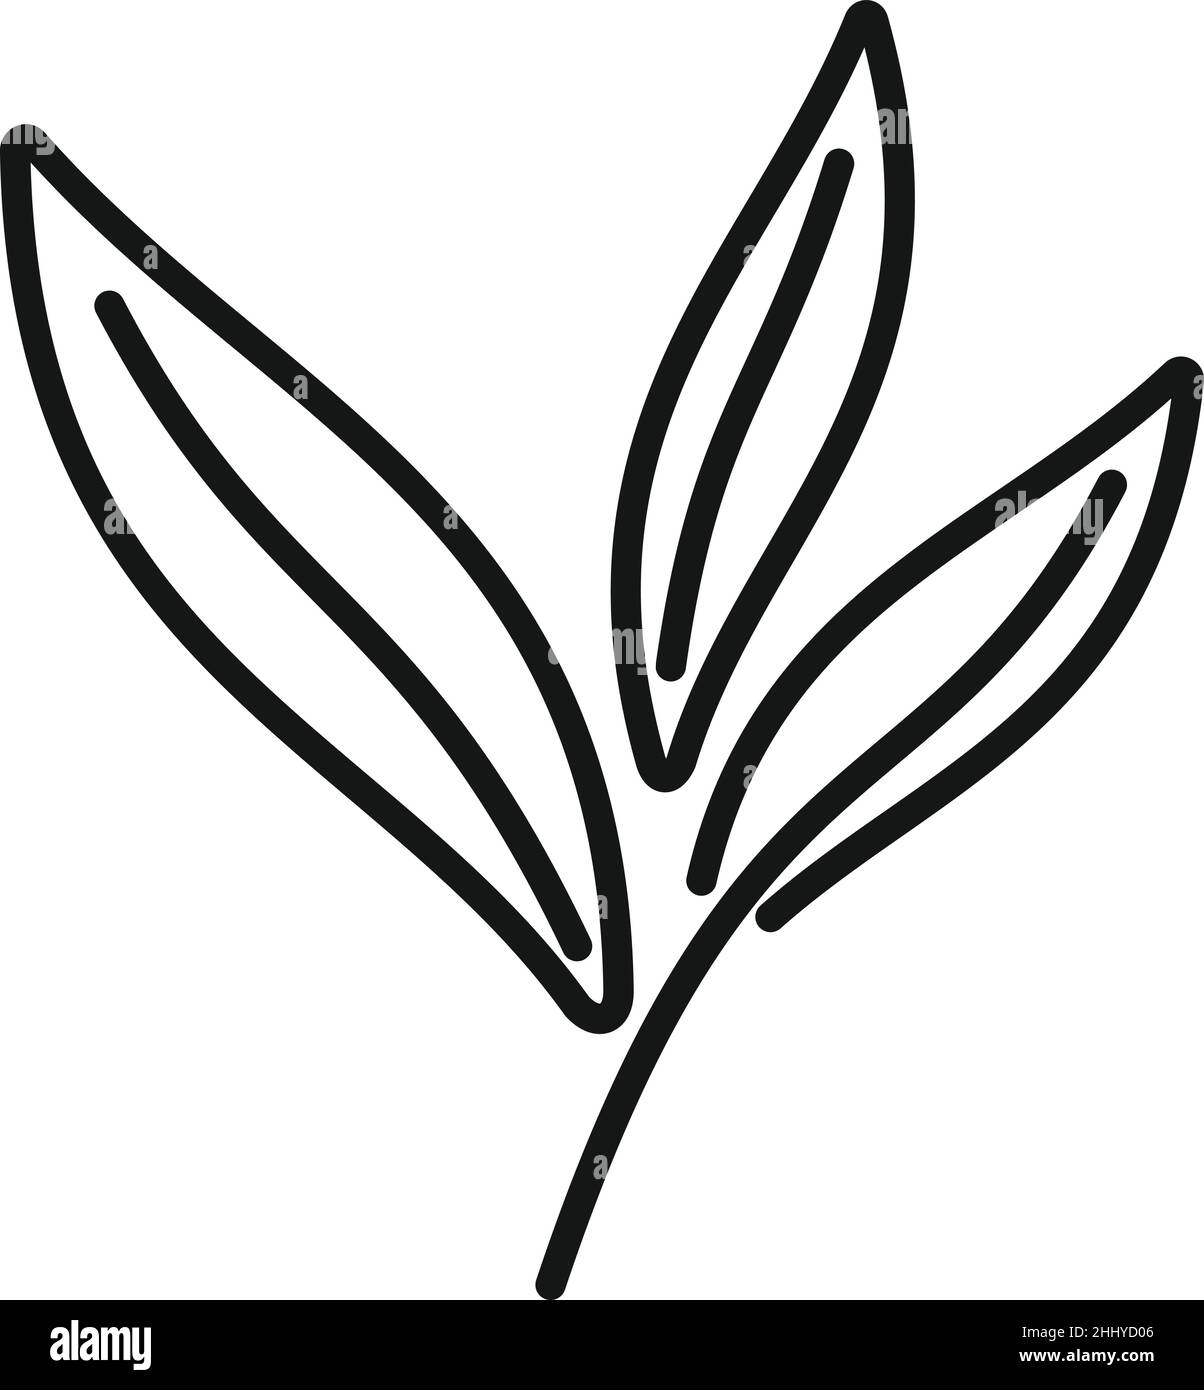 Vektor der Kontur des Symbols der Salbeipflanze. Kräuterblatt. Stick wisch Stock Vektor